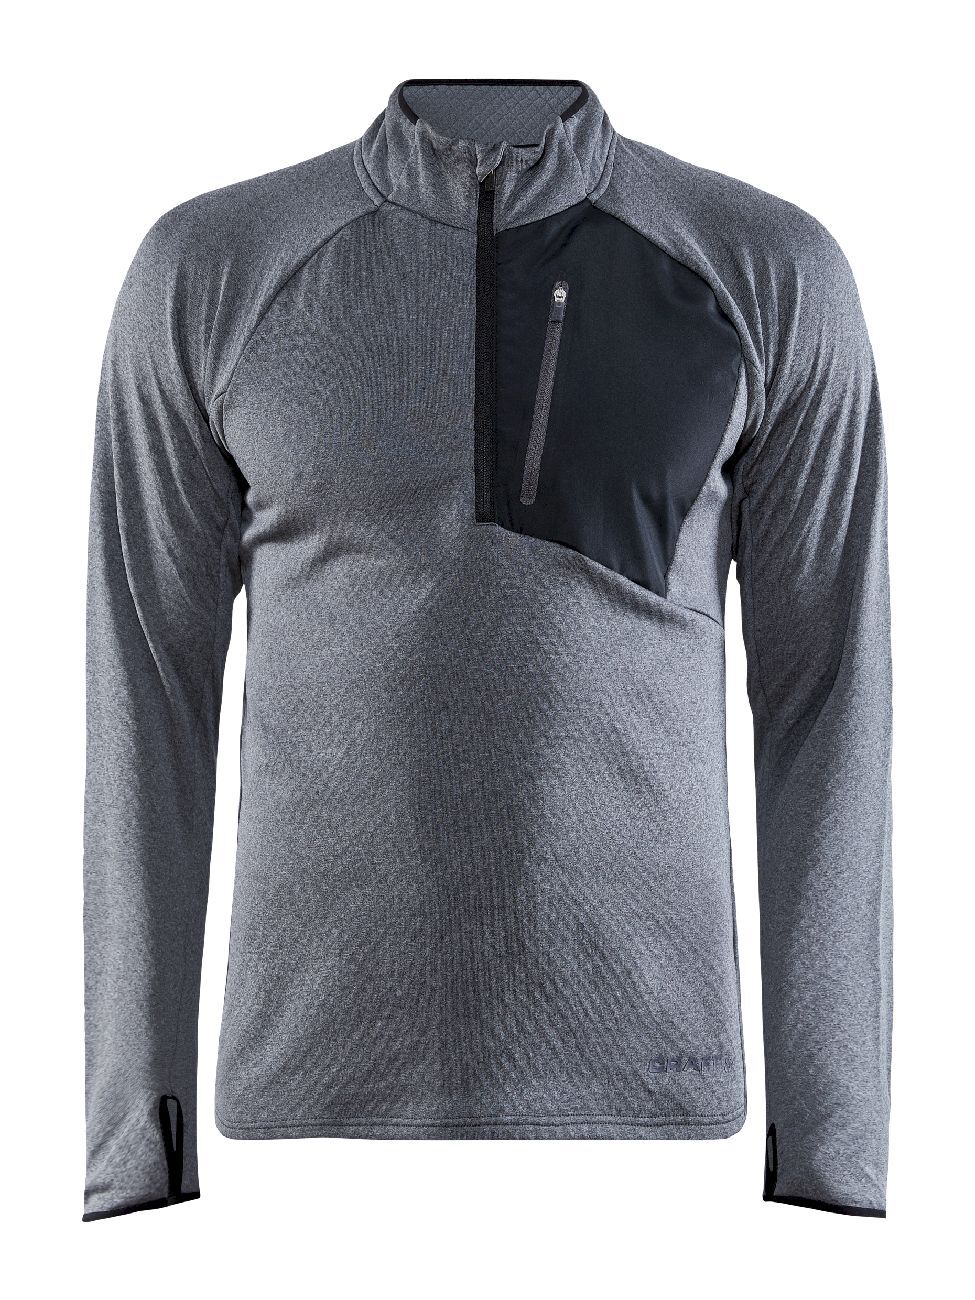 Craft Core Trim Thermal Midlayer - Fleece jacket - Men's